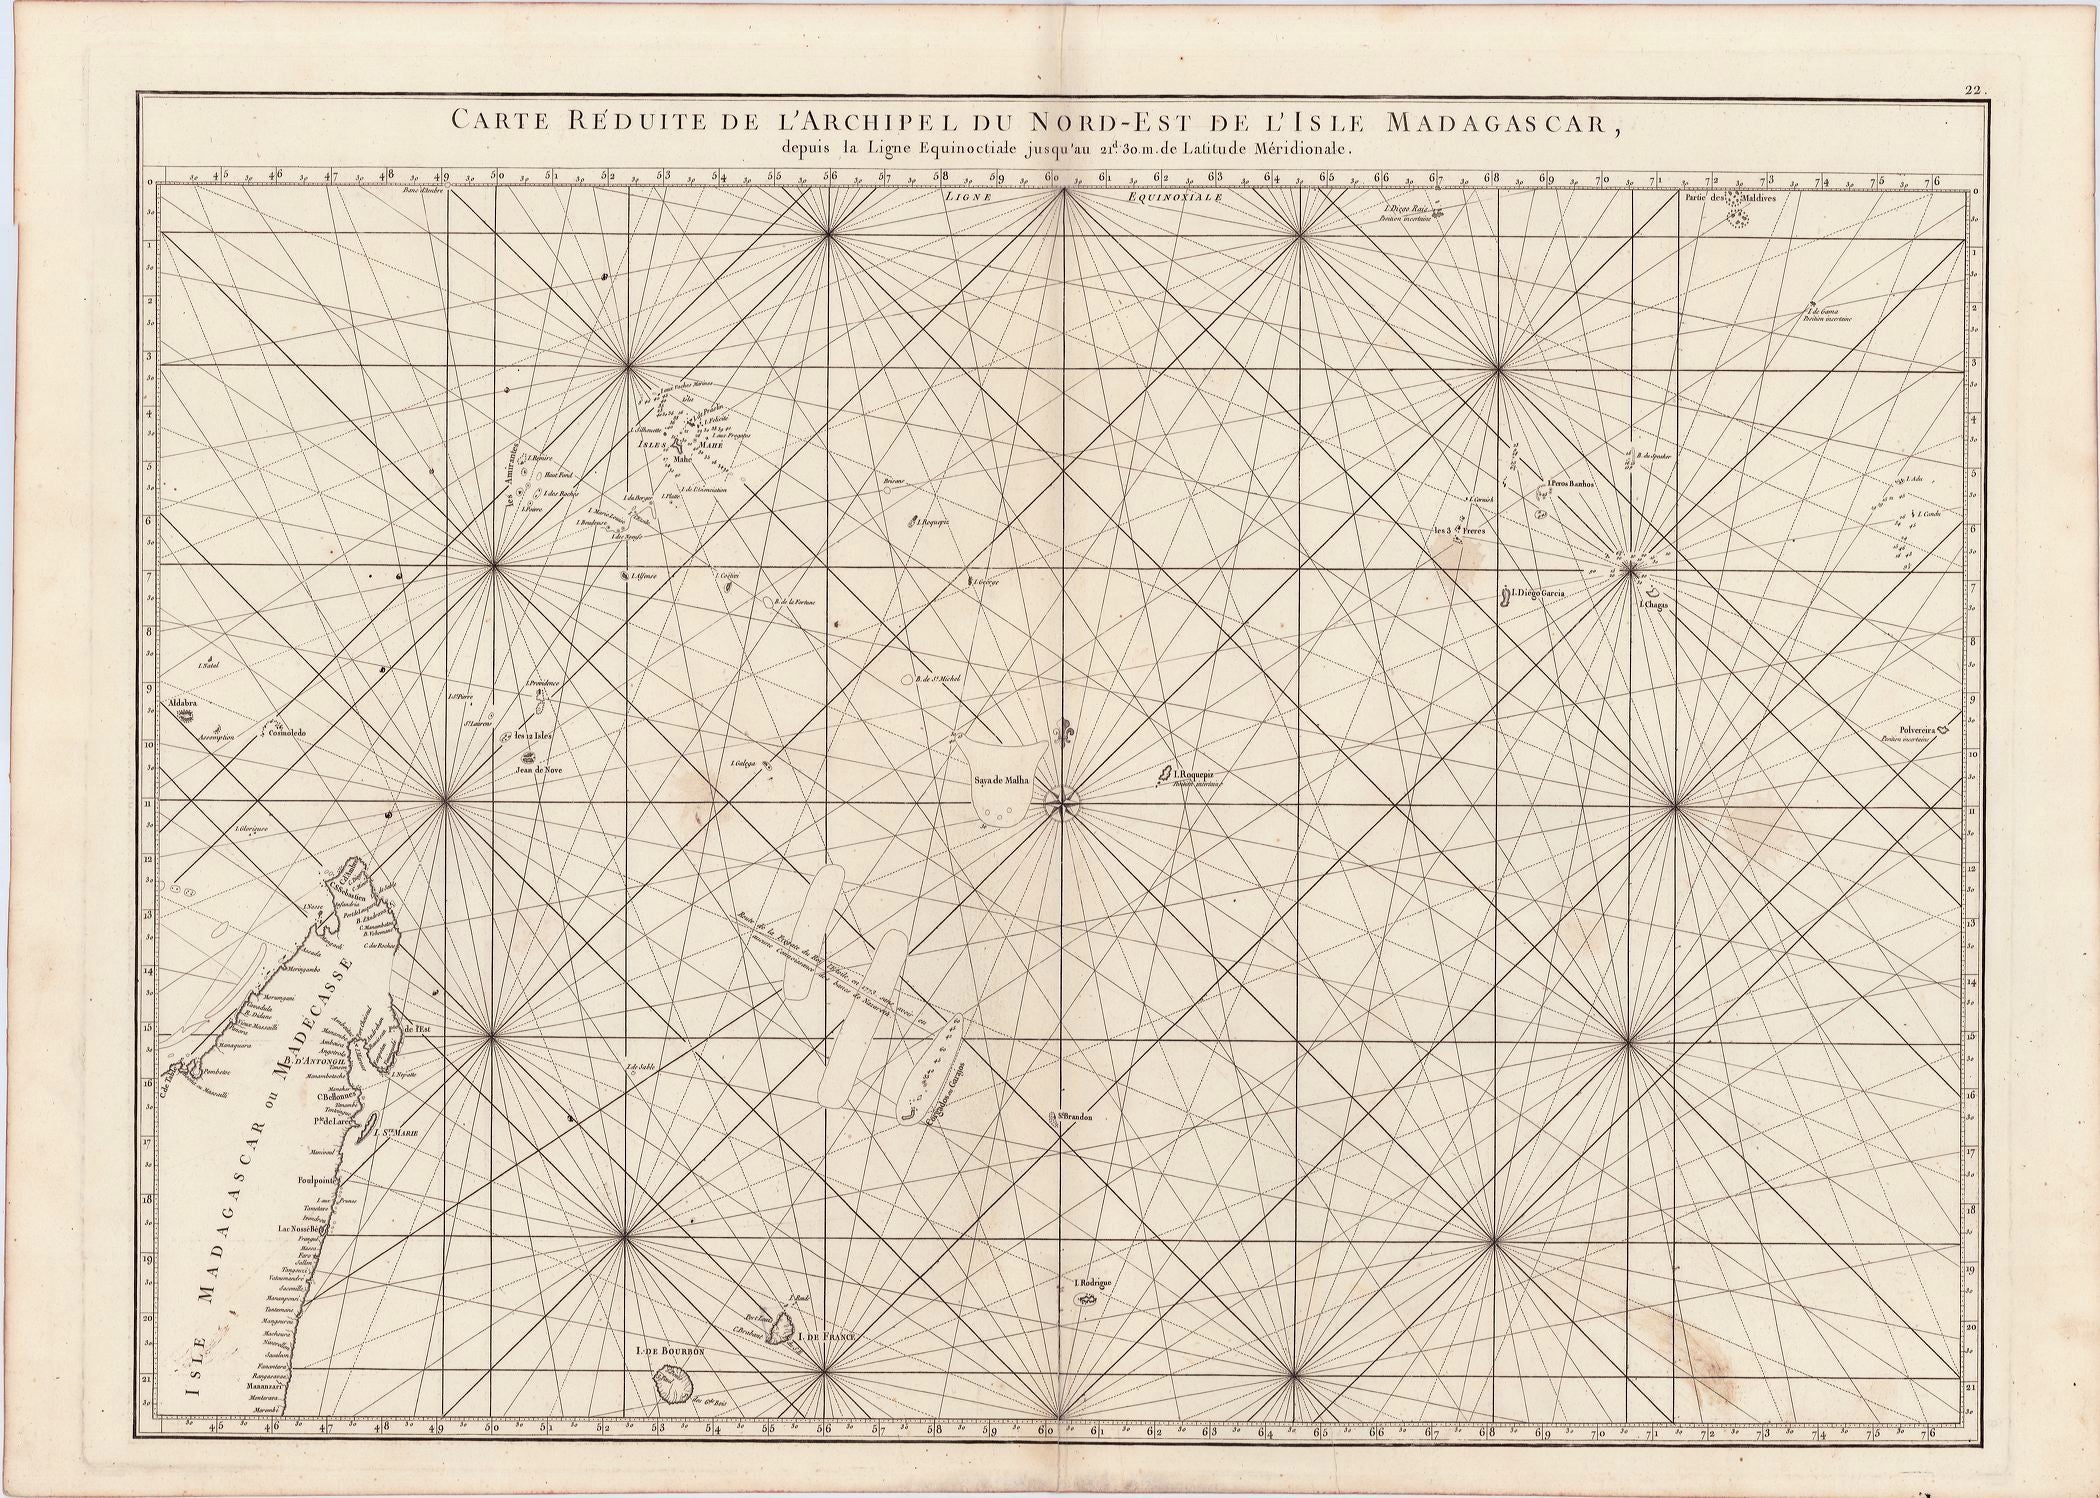 Mannevillette, Jean Baptiste: Carte reduite de l'Archipel du Nord-Est de l'Isle Madagascar 1775